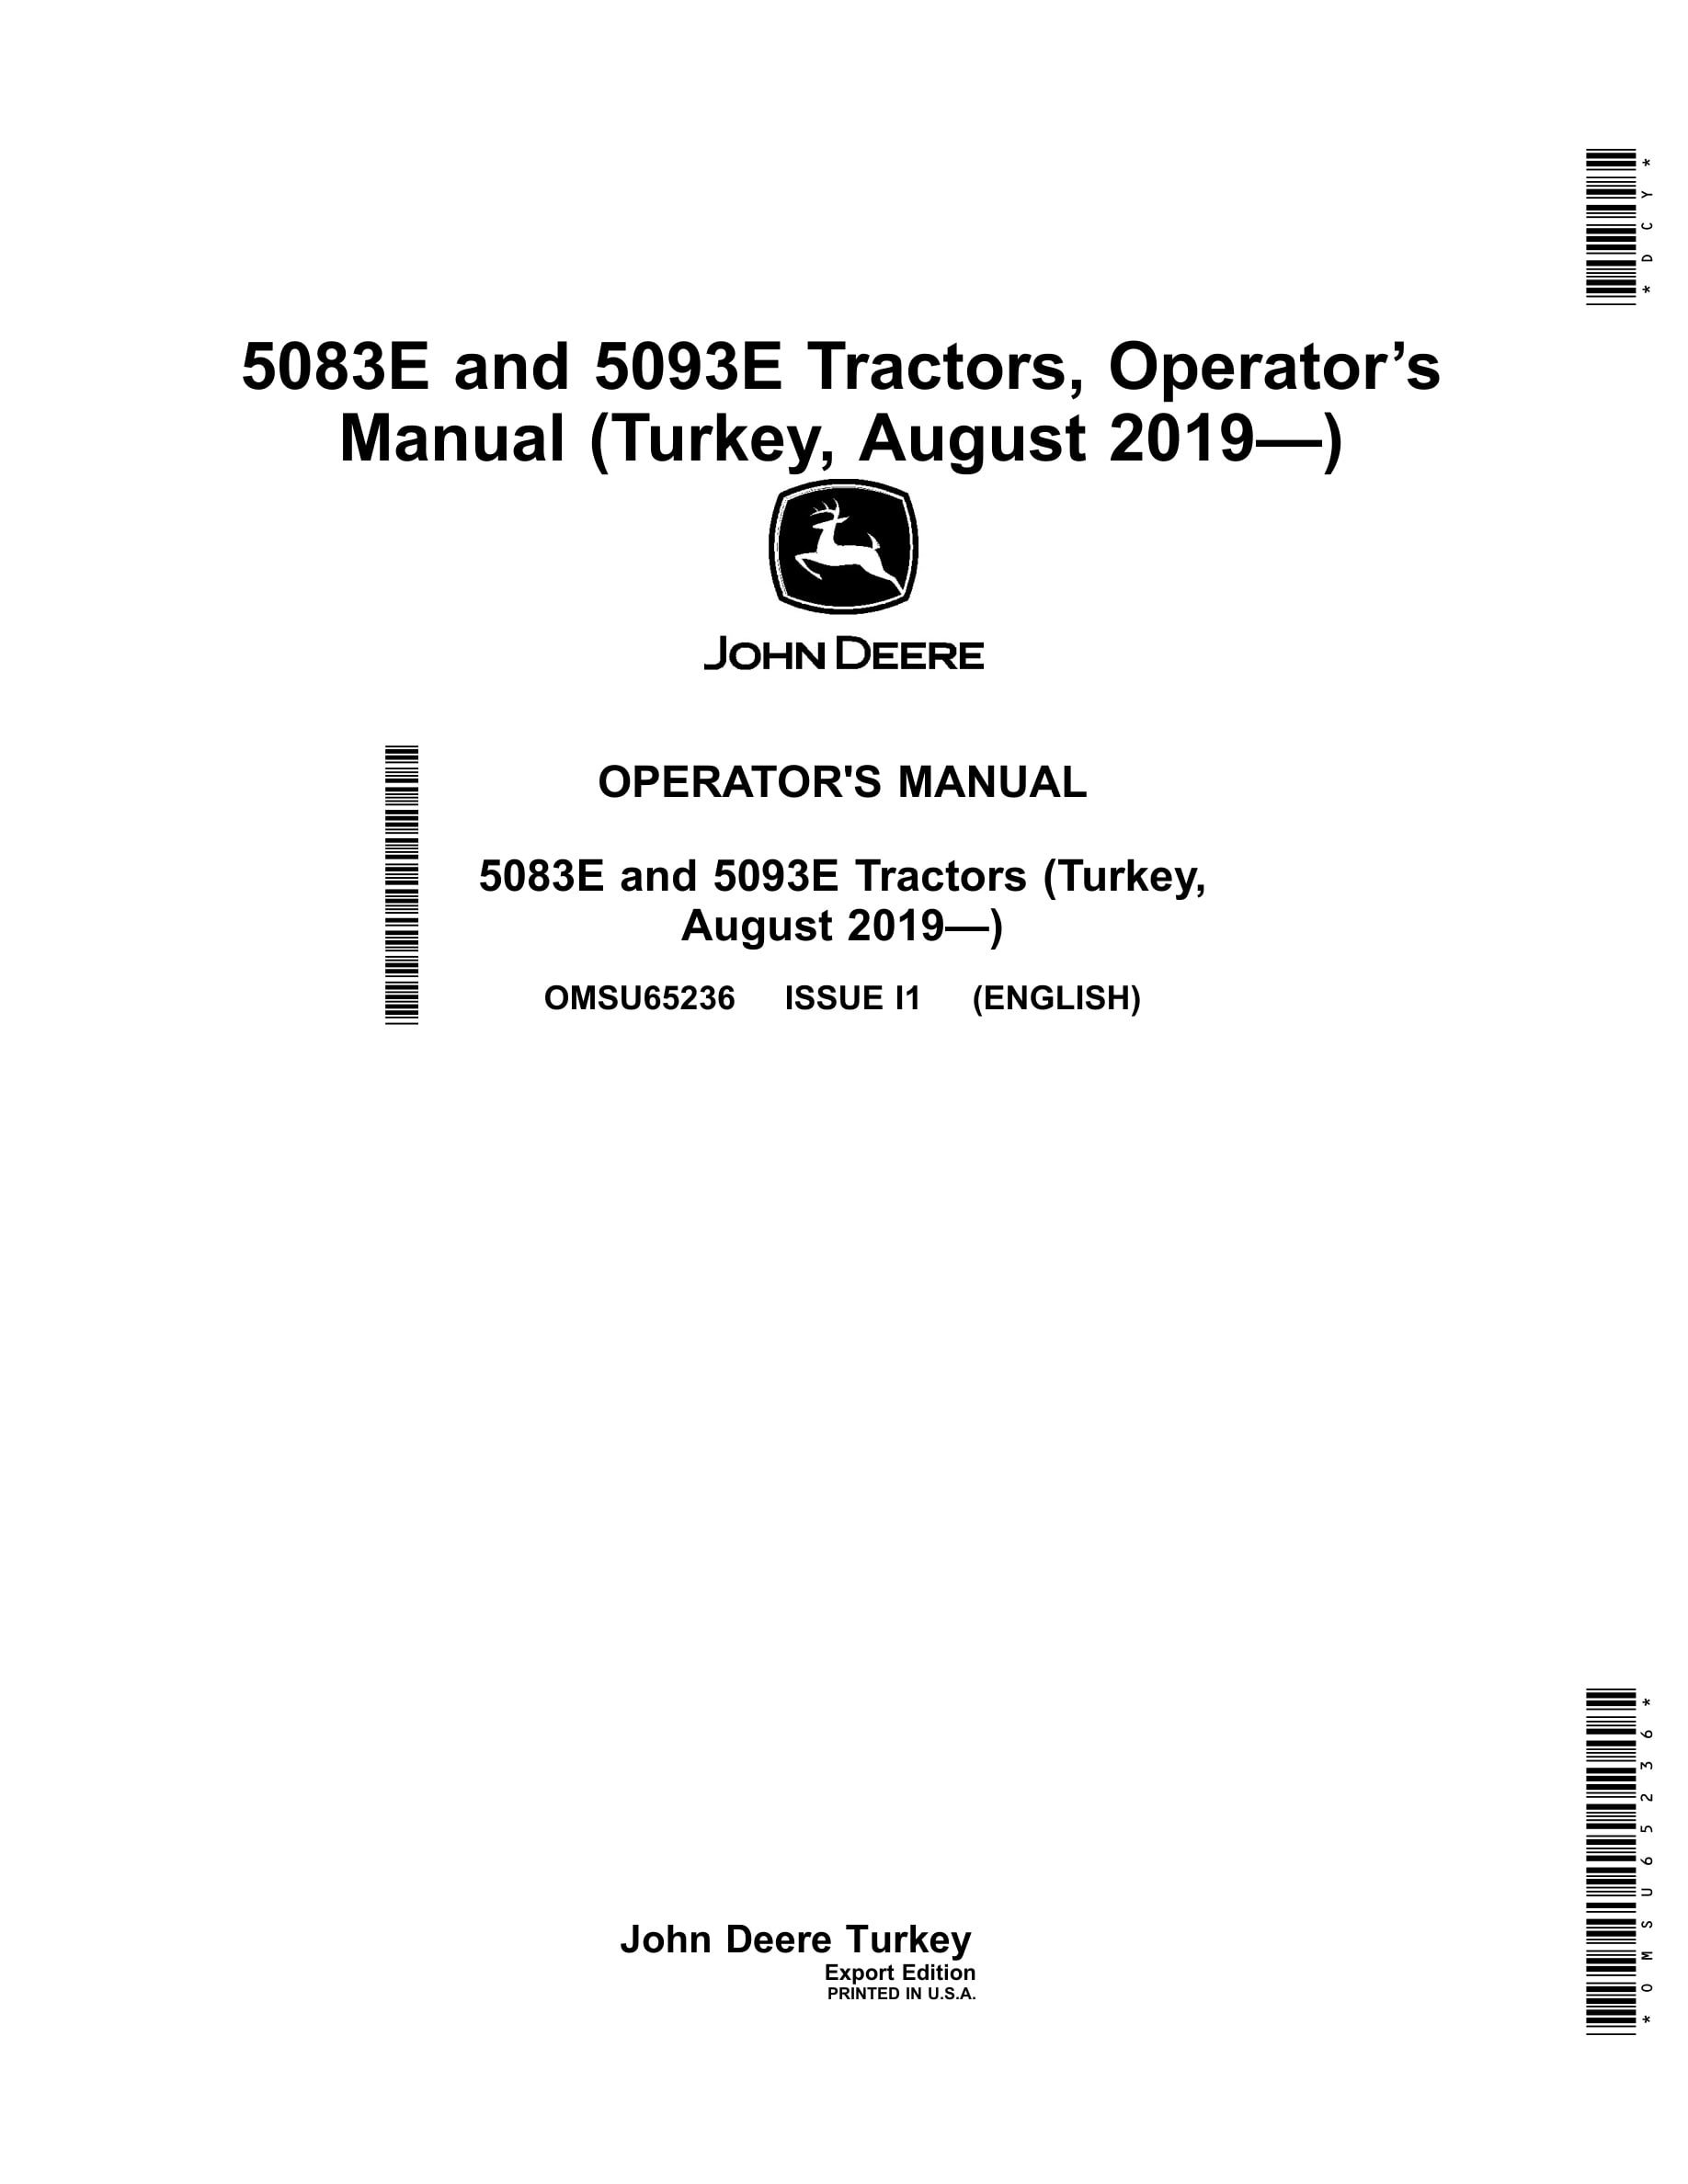 John Deere 5083e And 5093e Tractors Operator Manuals OMSU65236-1